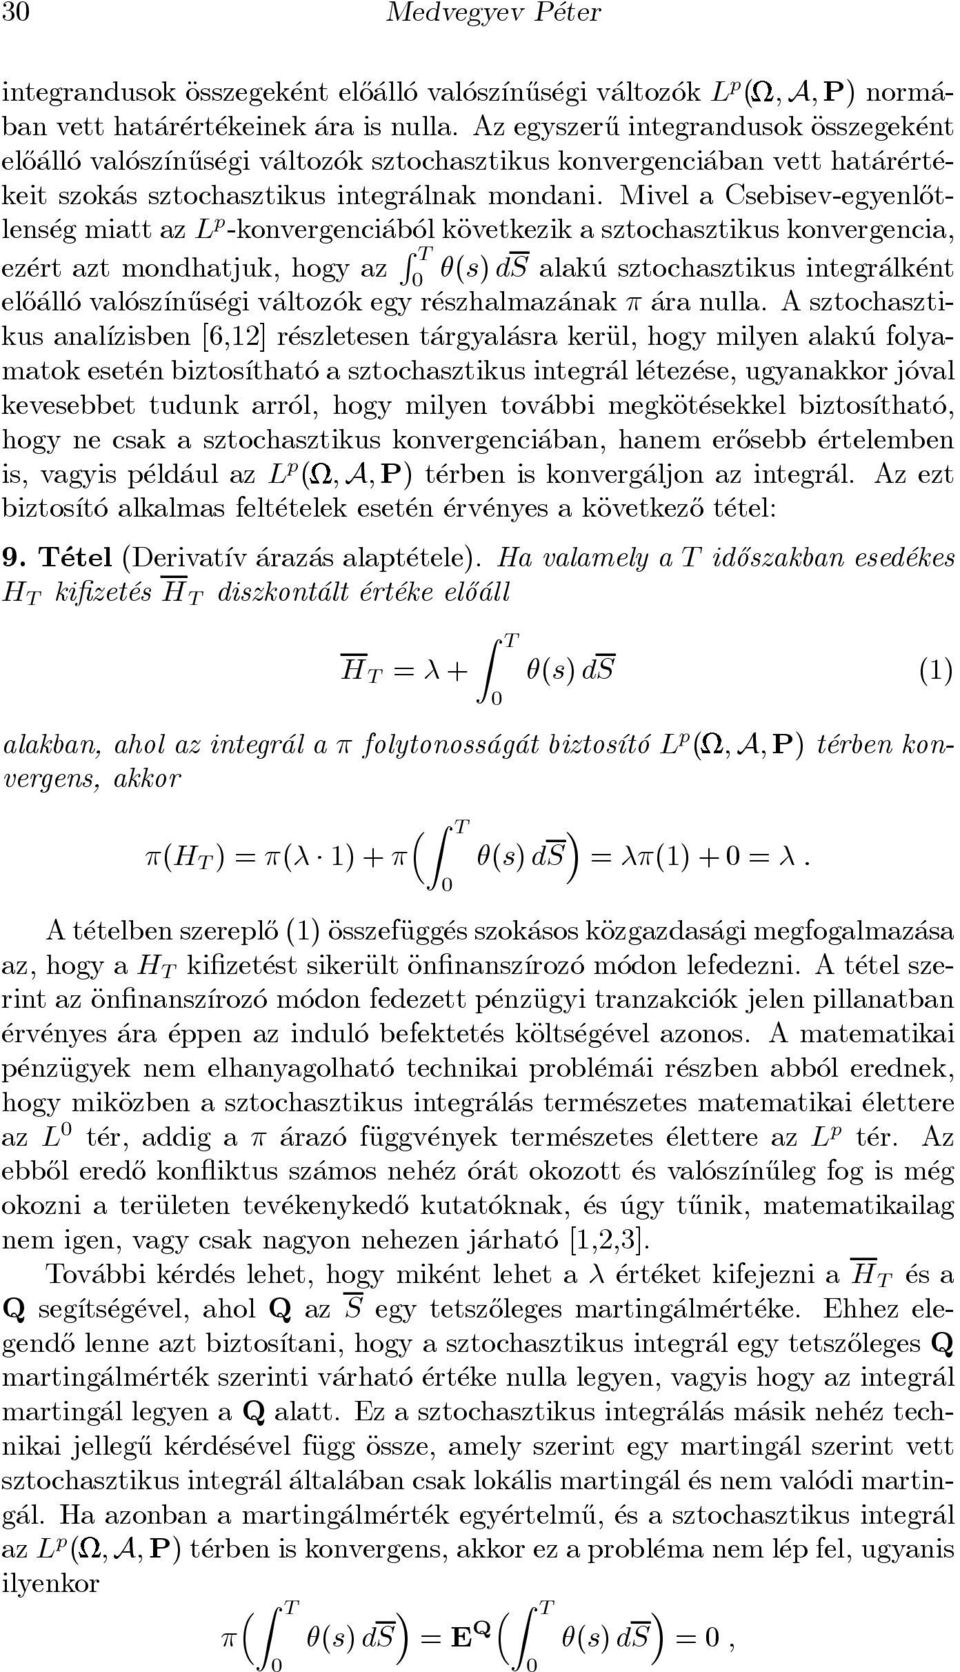 Mivel a Csebisev-egyenl}otlens eg miatt az L p -konvergenci ab ol käovetkezik a sztochasztikus konvergencia, ez ert azt mondhatjuk, hogy az R T µ(s) ds alak u sztochasztikus integr alk ent el}o all o